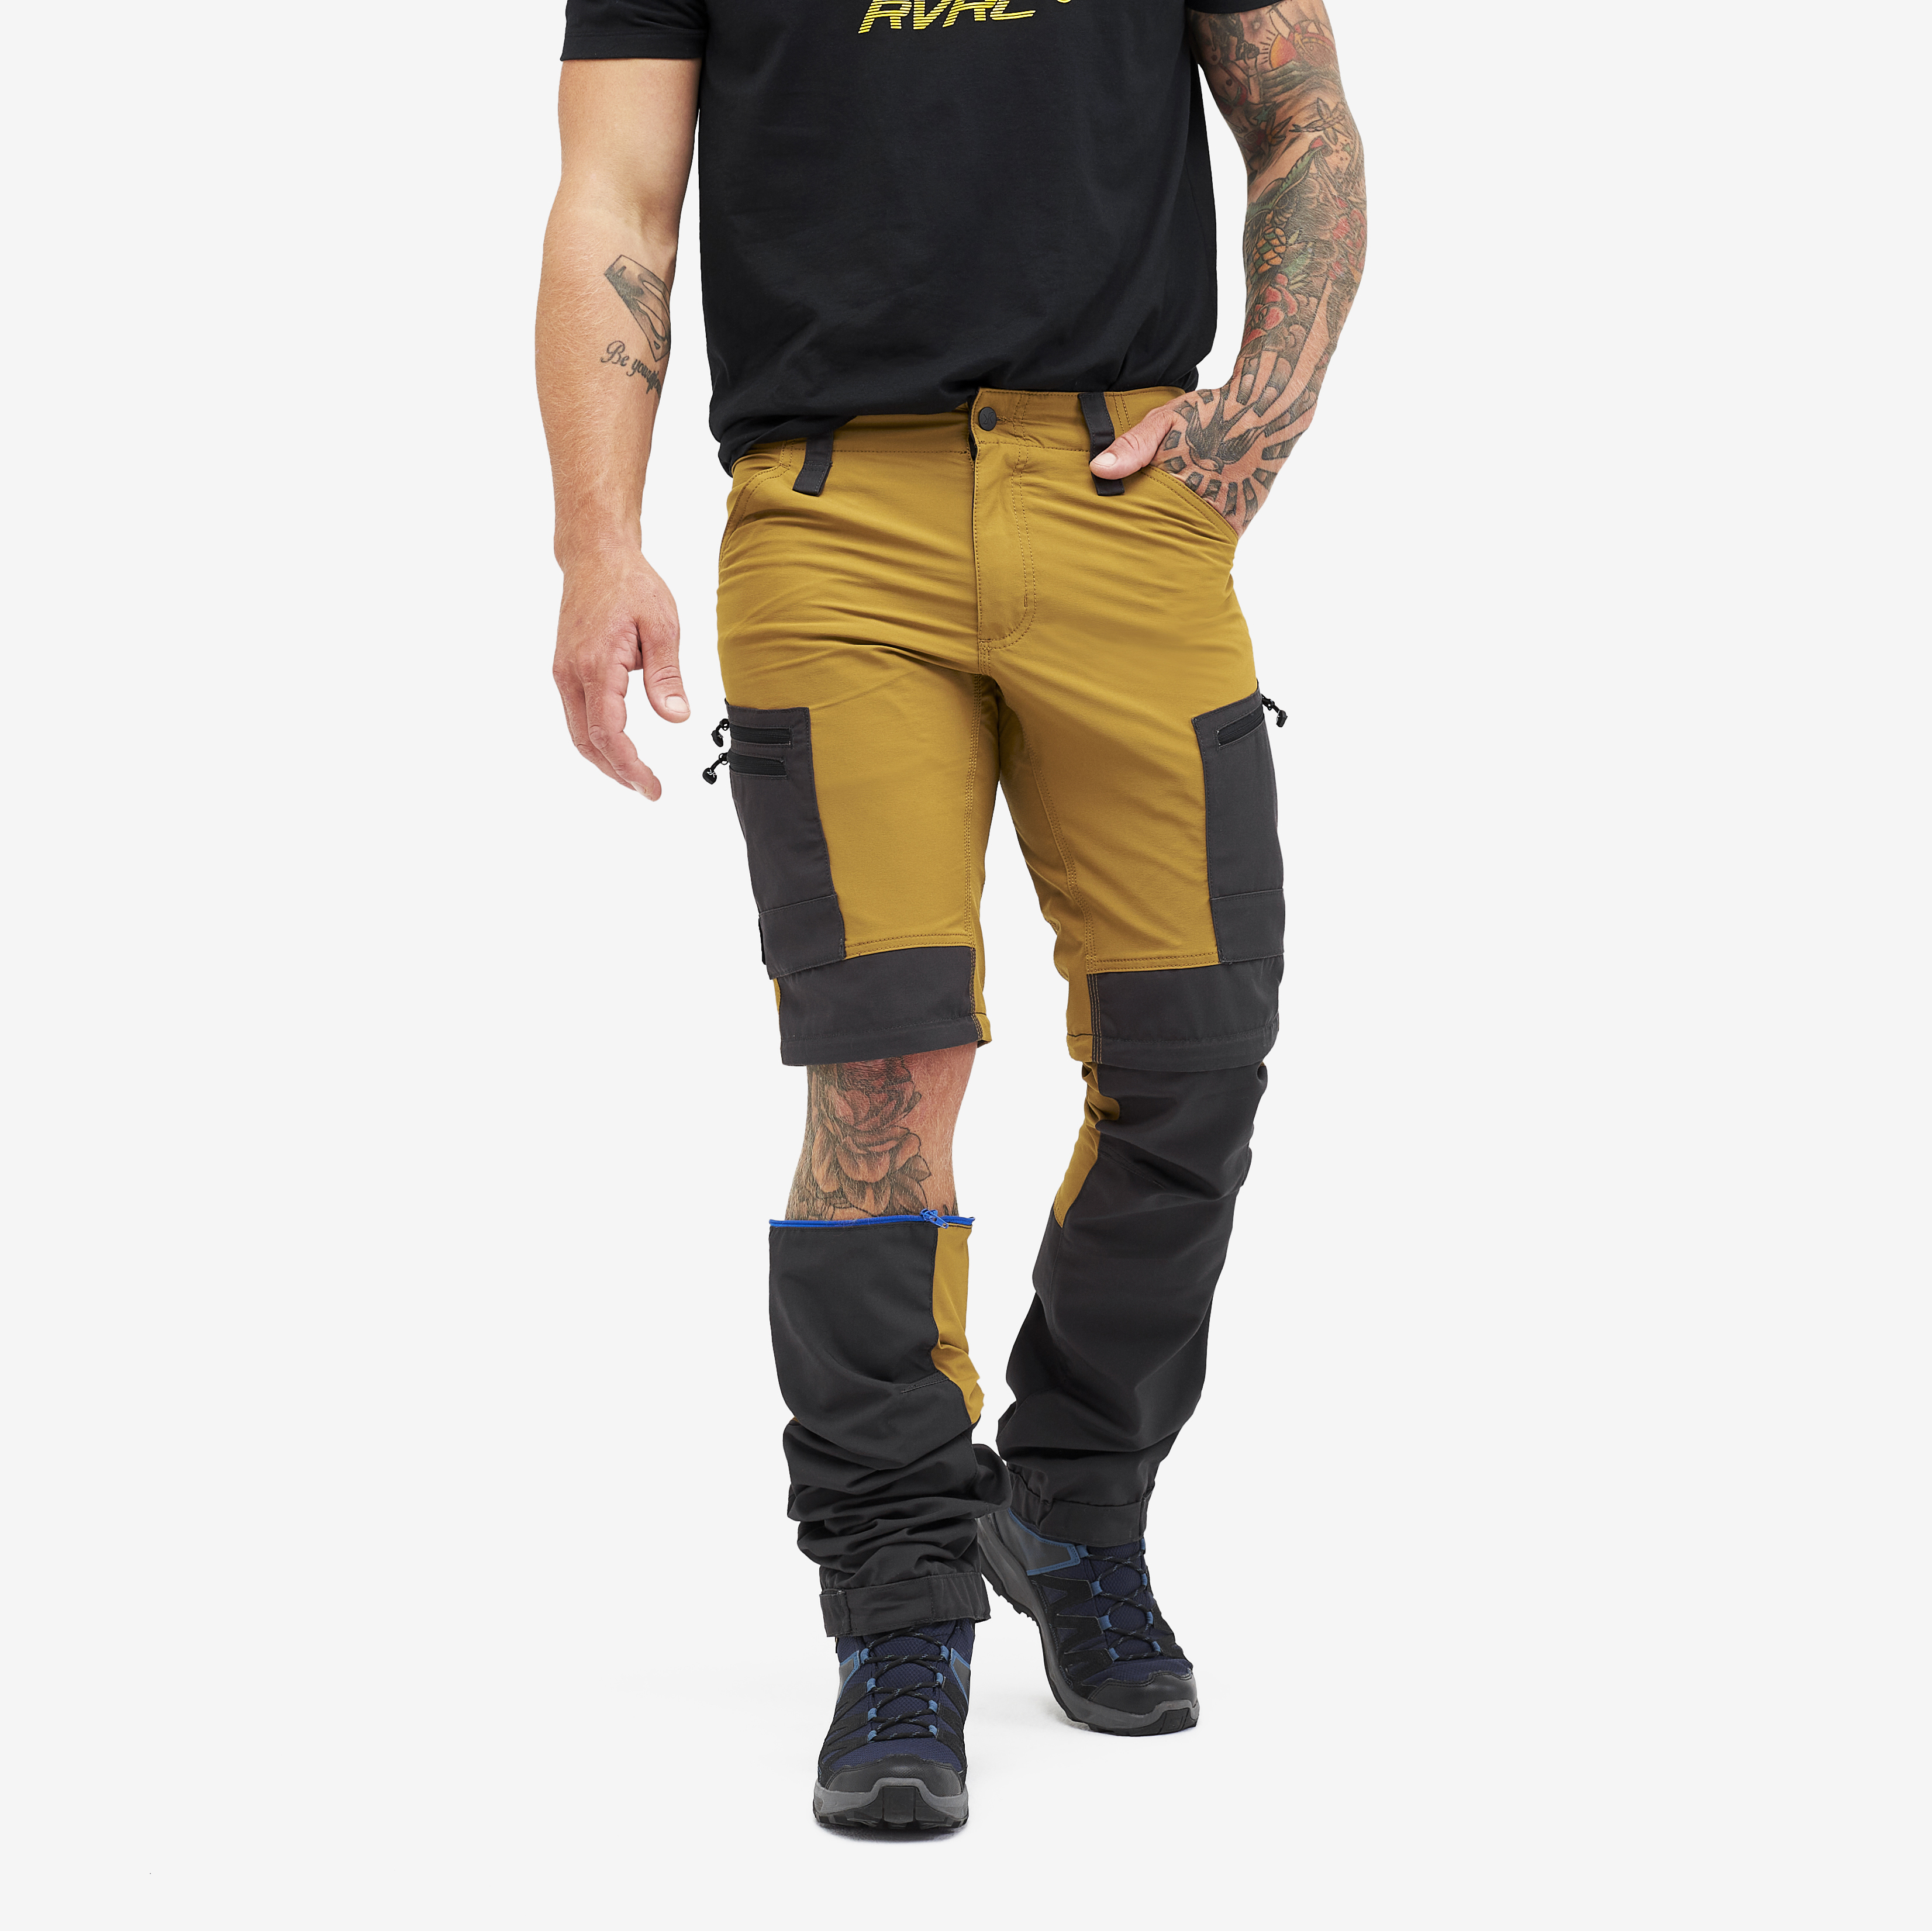 RVRC GP Pro Zip-off hiking pants for men in yellow